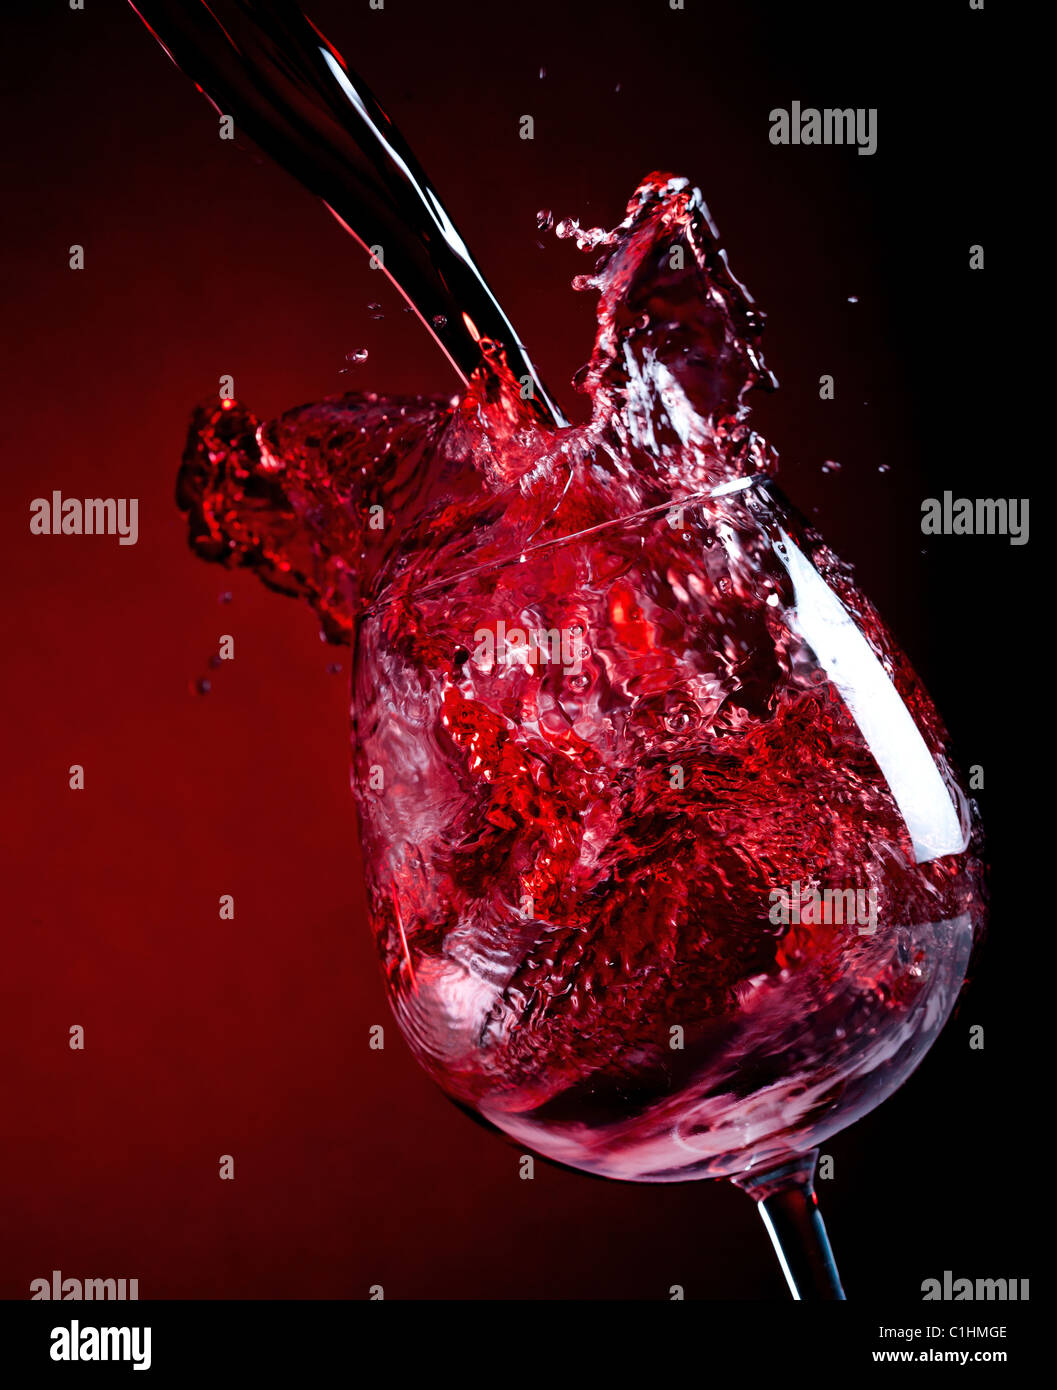 Vino rosso versando in giù in un bicchiere da vino Foto Stock